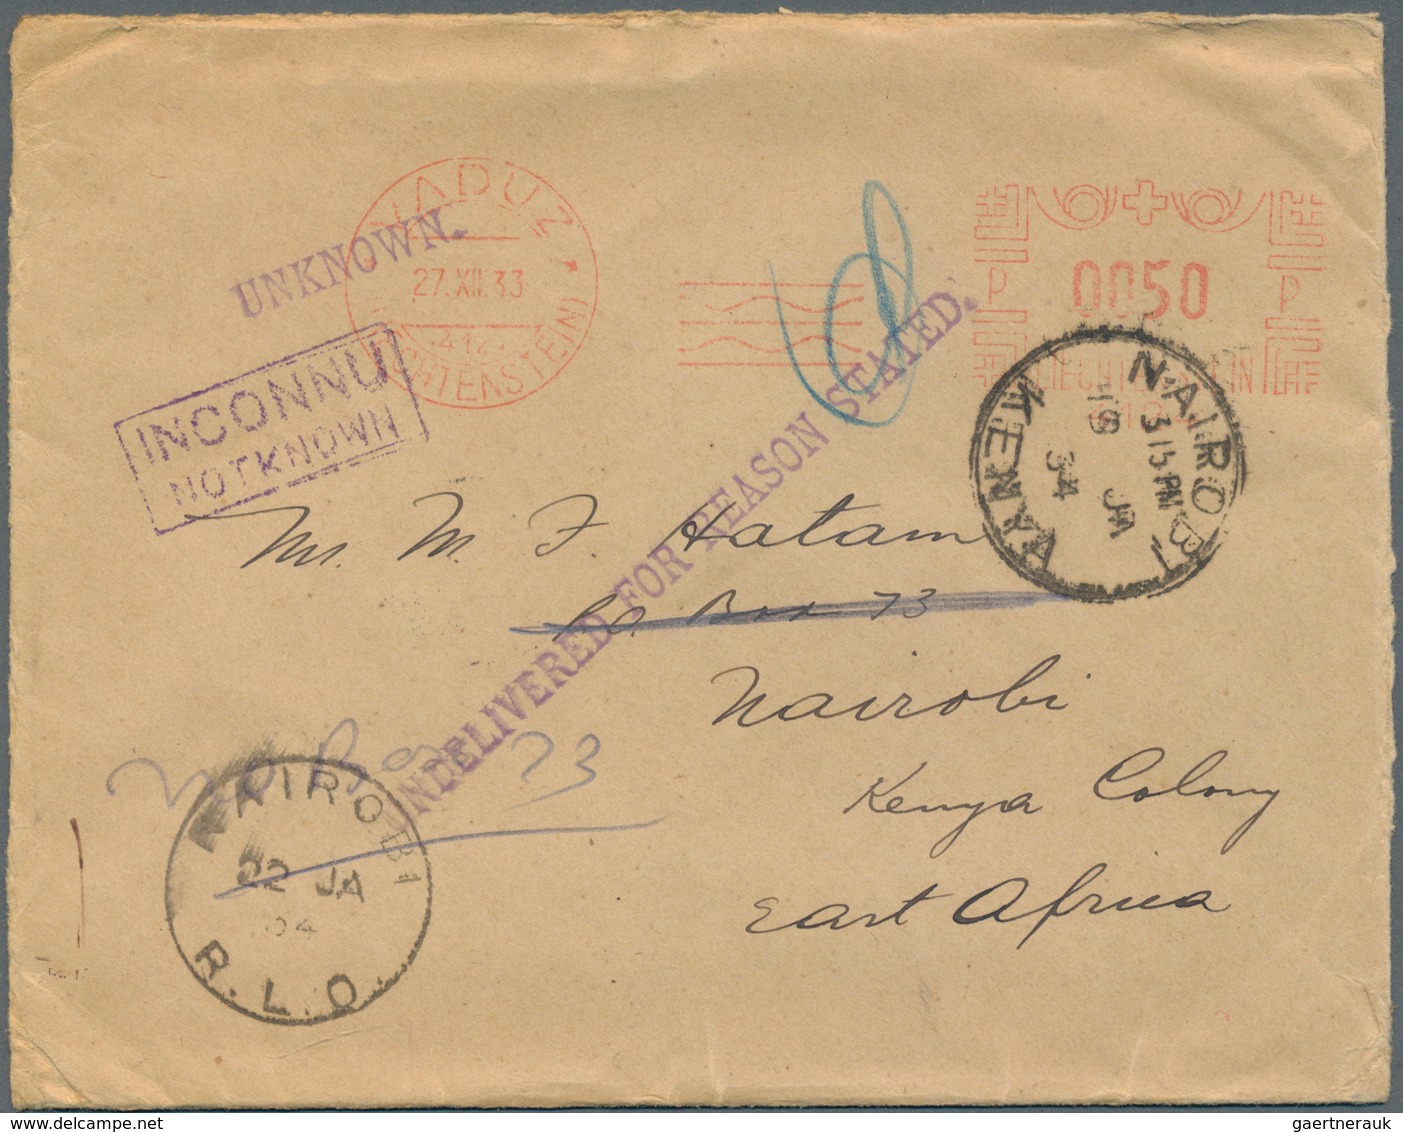 Österreich: 1892/1940, Österreich, Schweiz und Liechtenstein, Partie von zehn Briefen/Karten, dabei